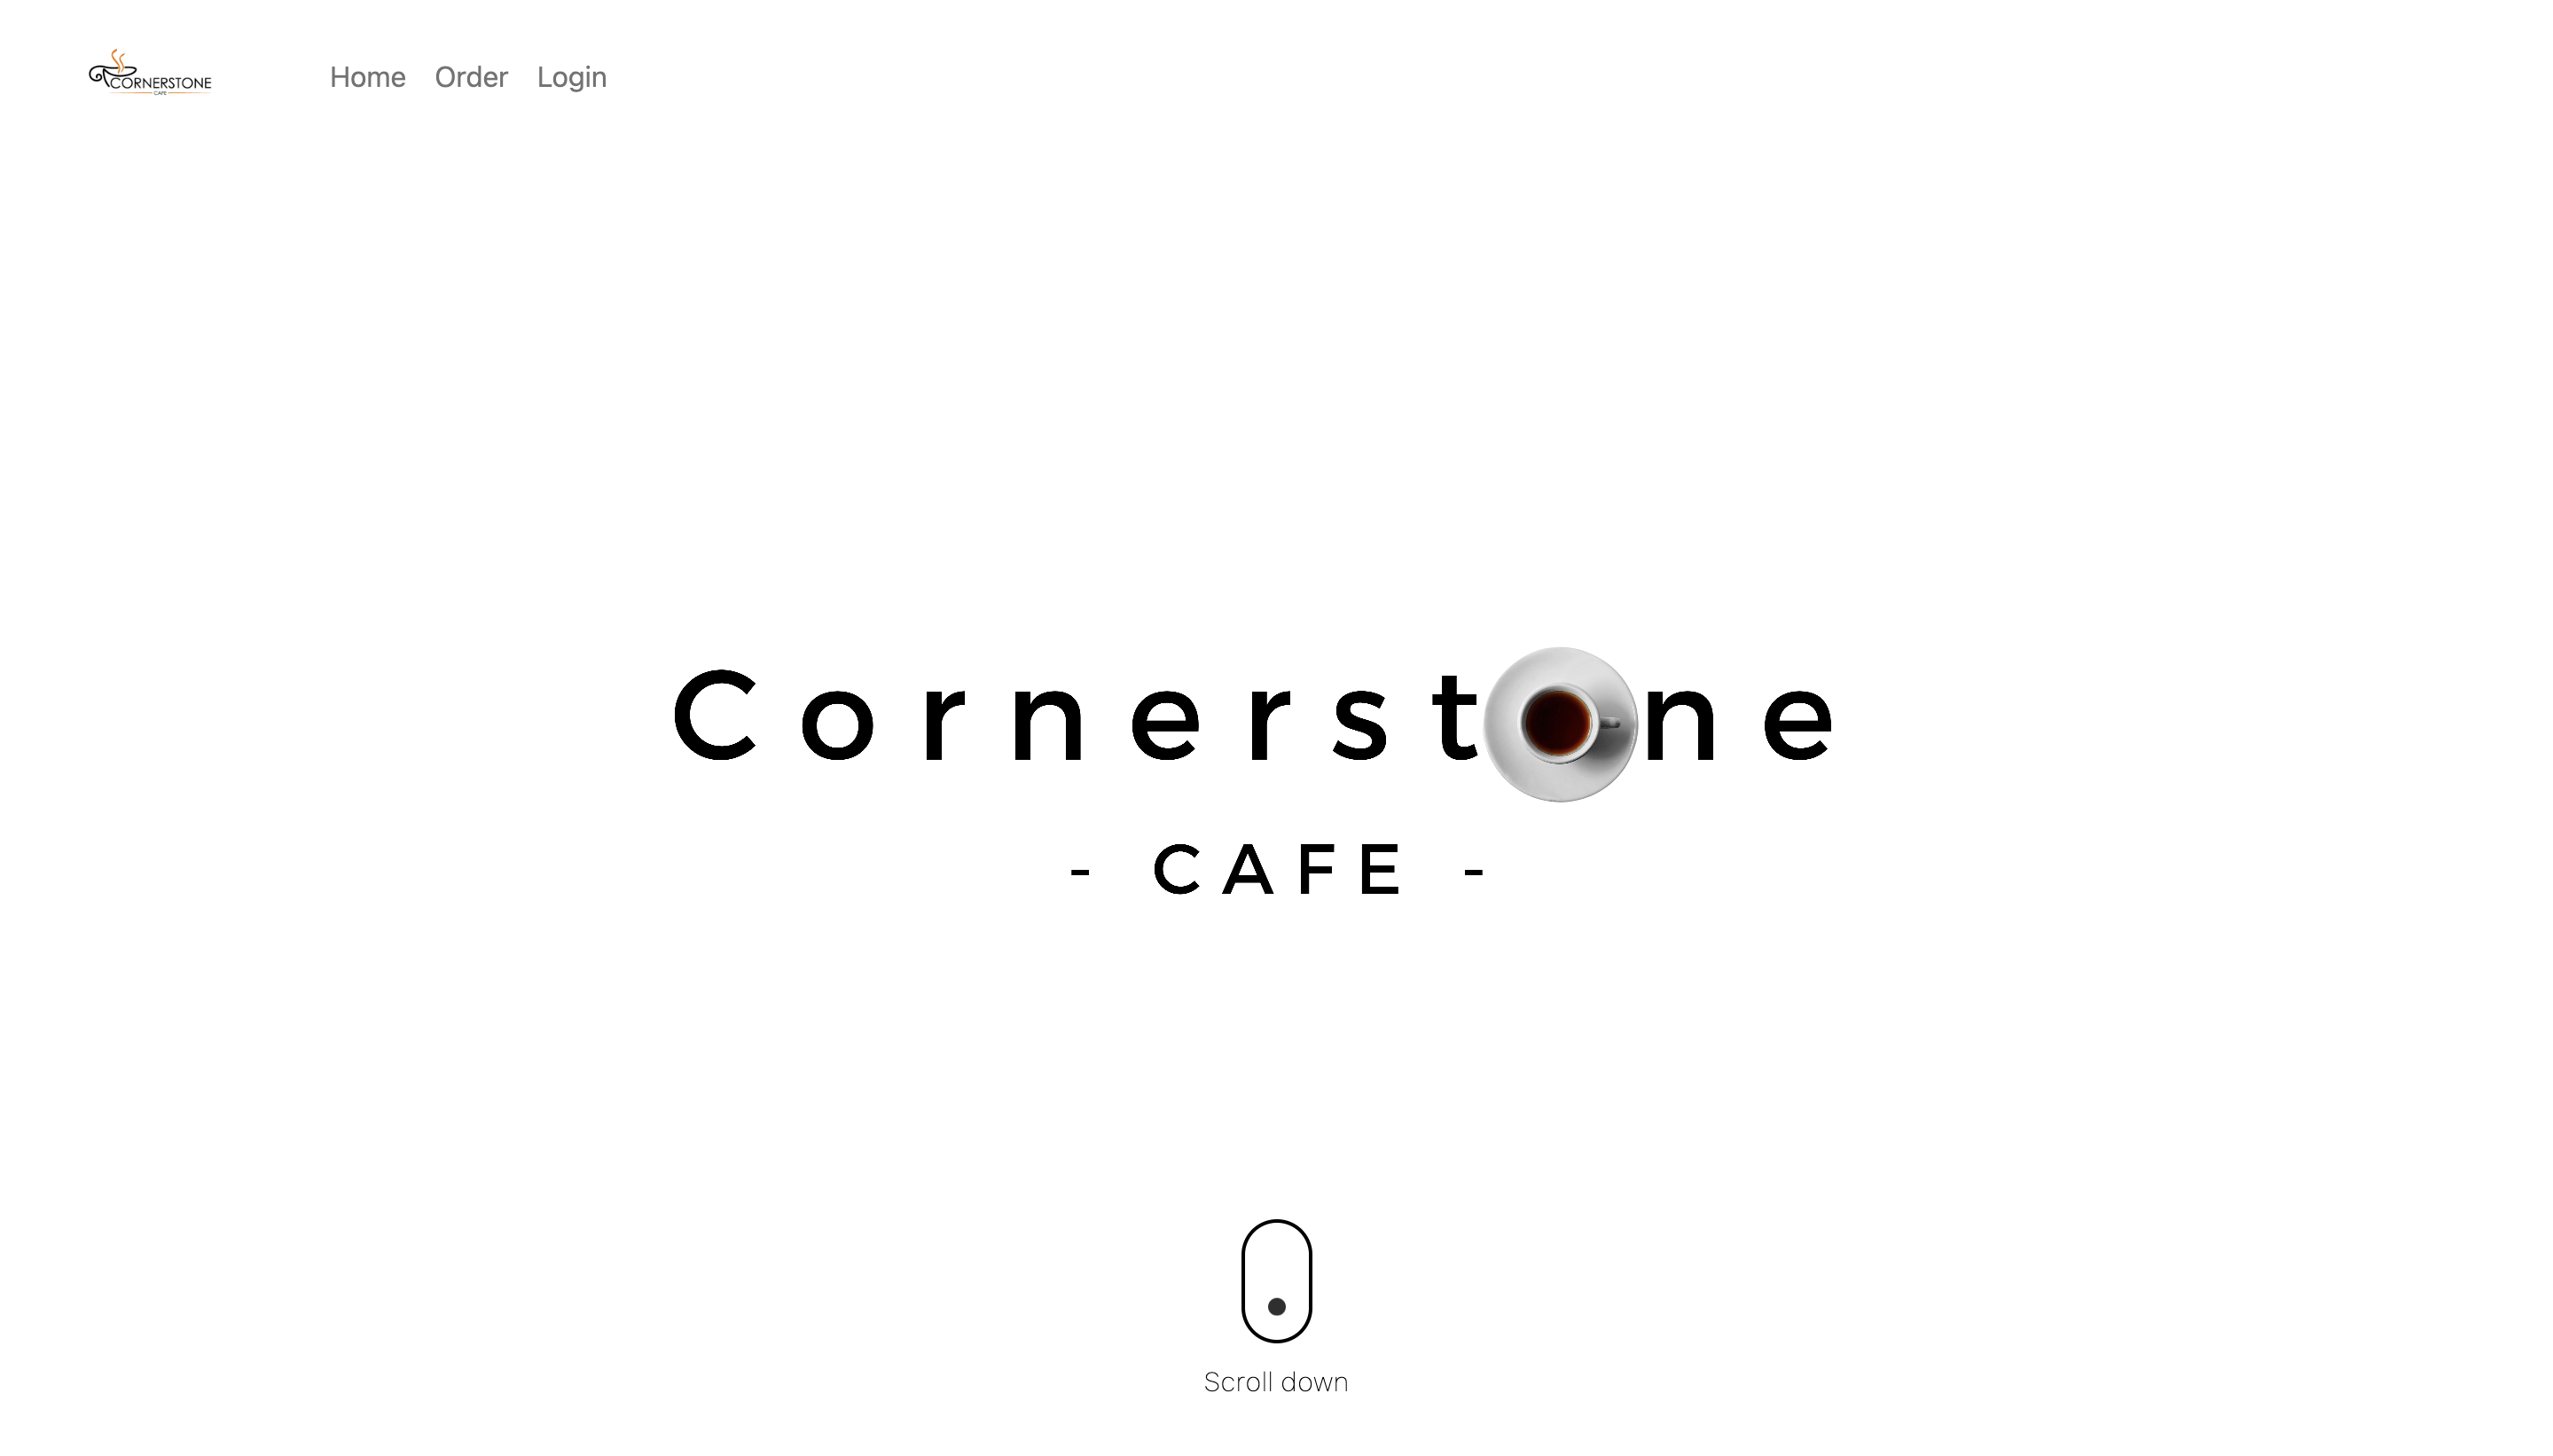 Cornerstone CAFE